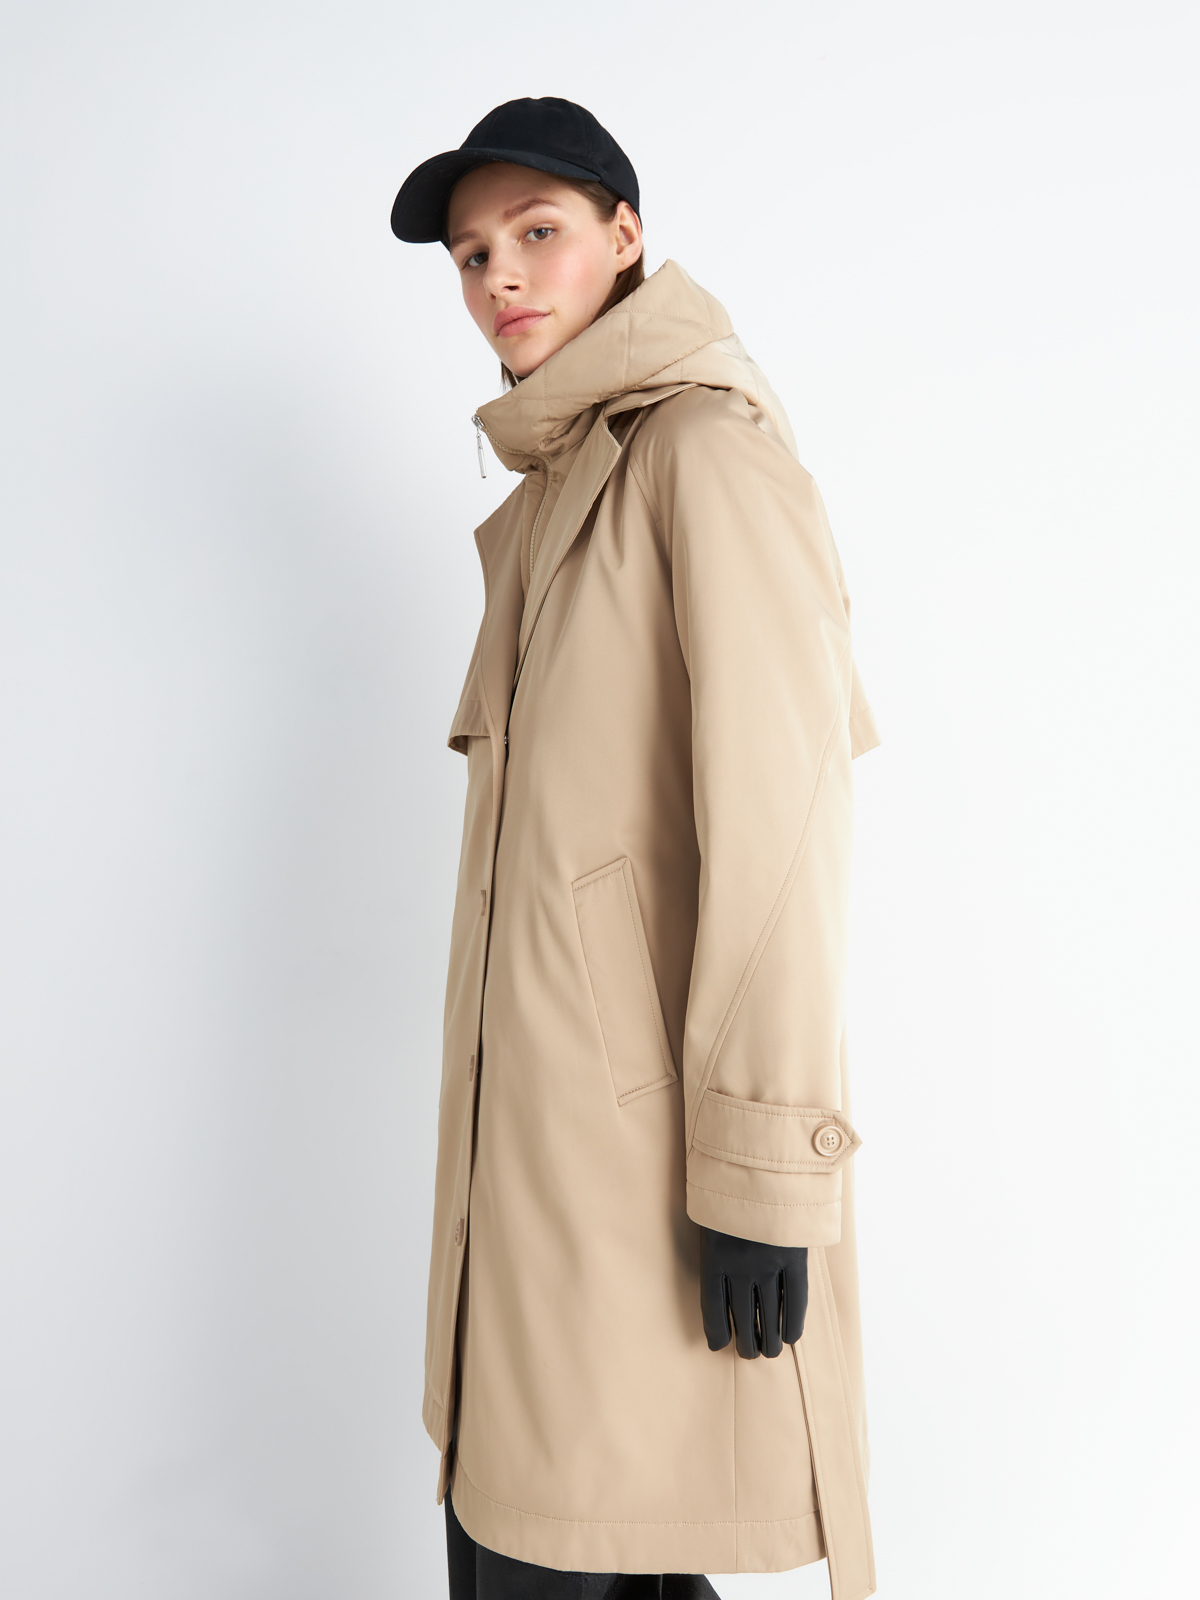 Пальто женское Arive ARV-WF-10011-03 коричневое 42 RU